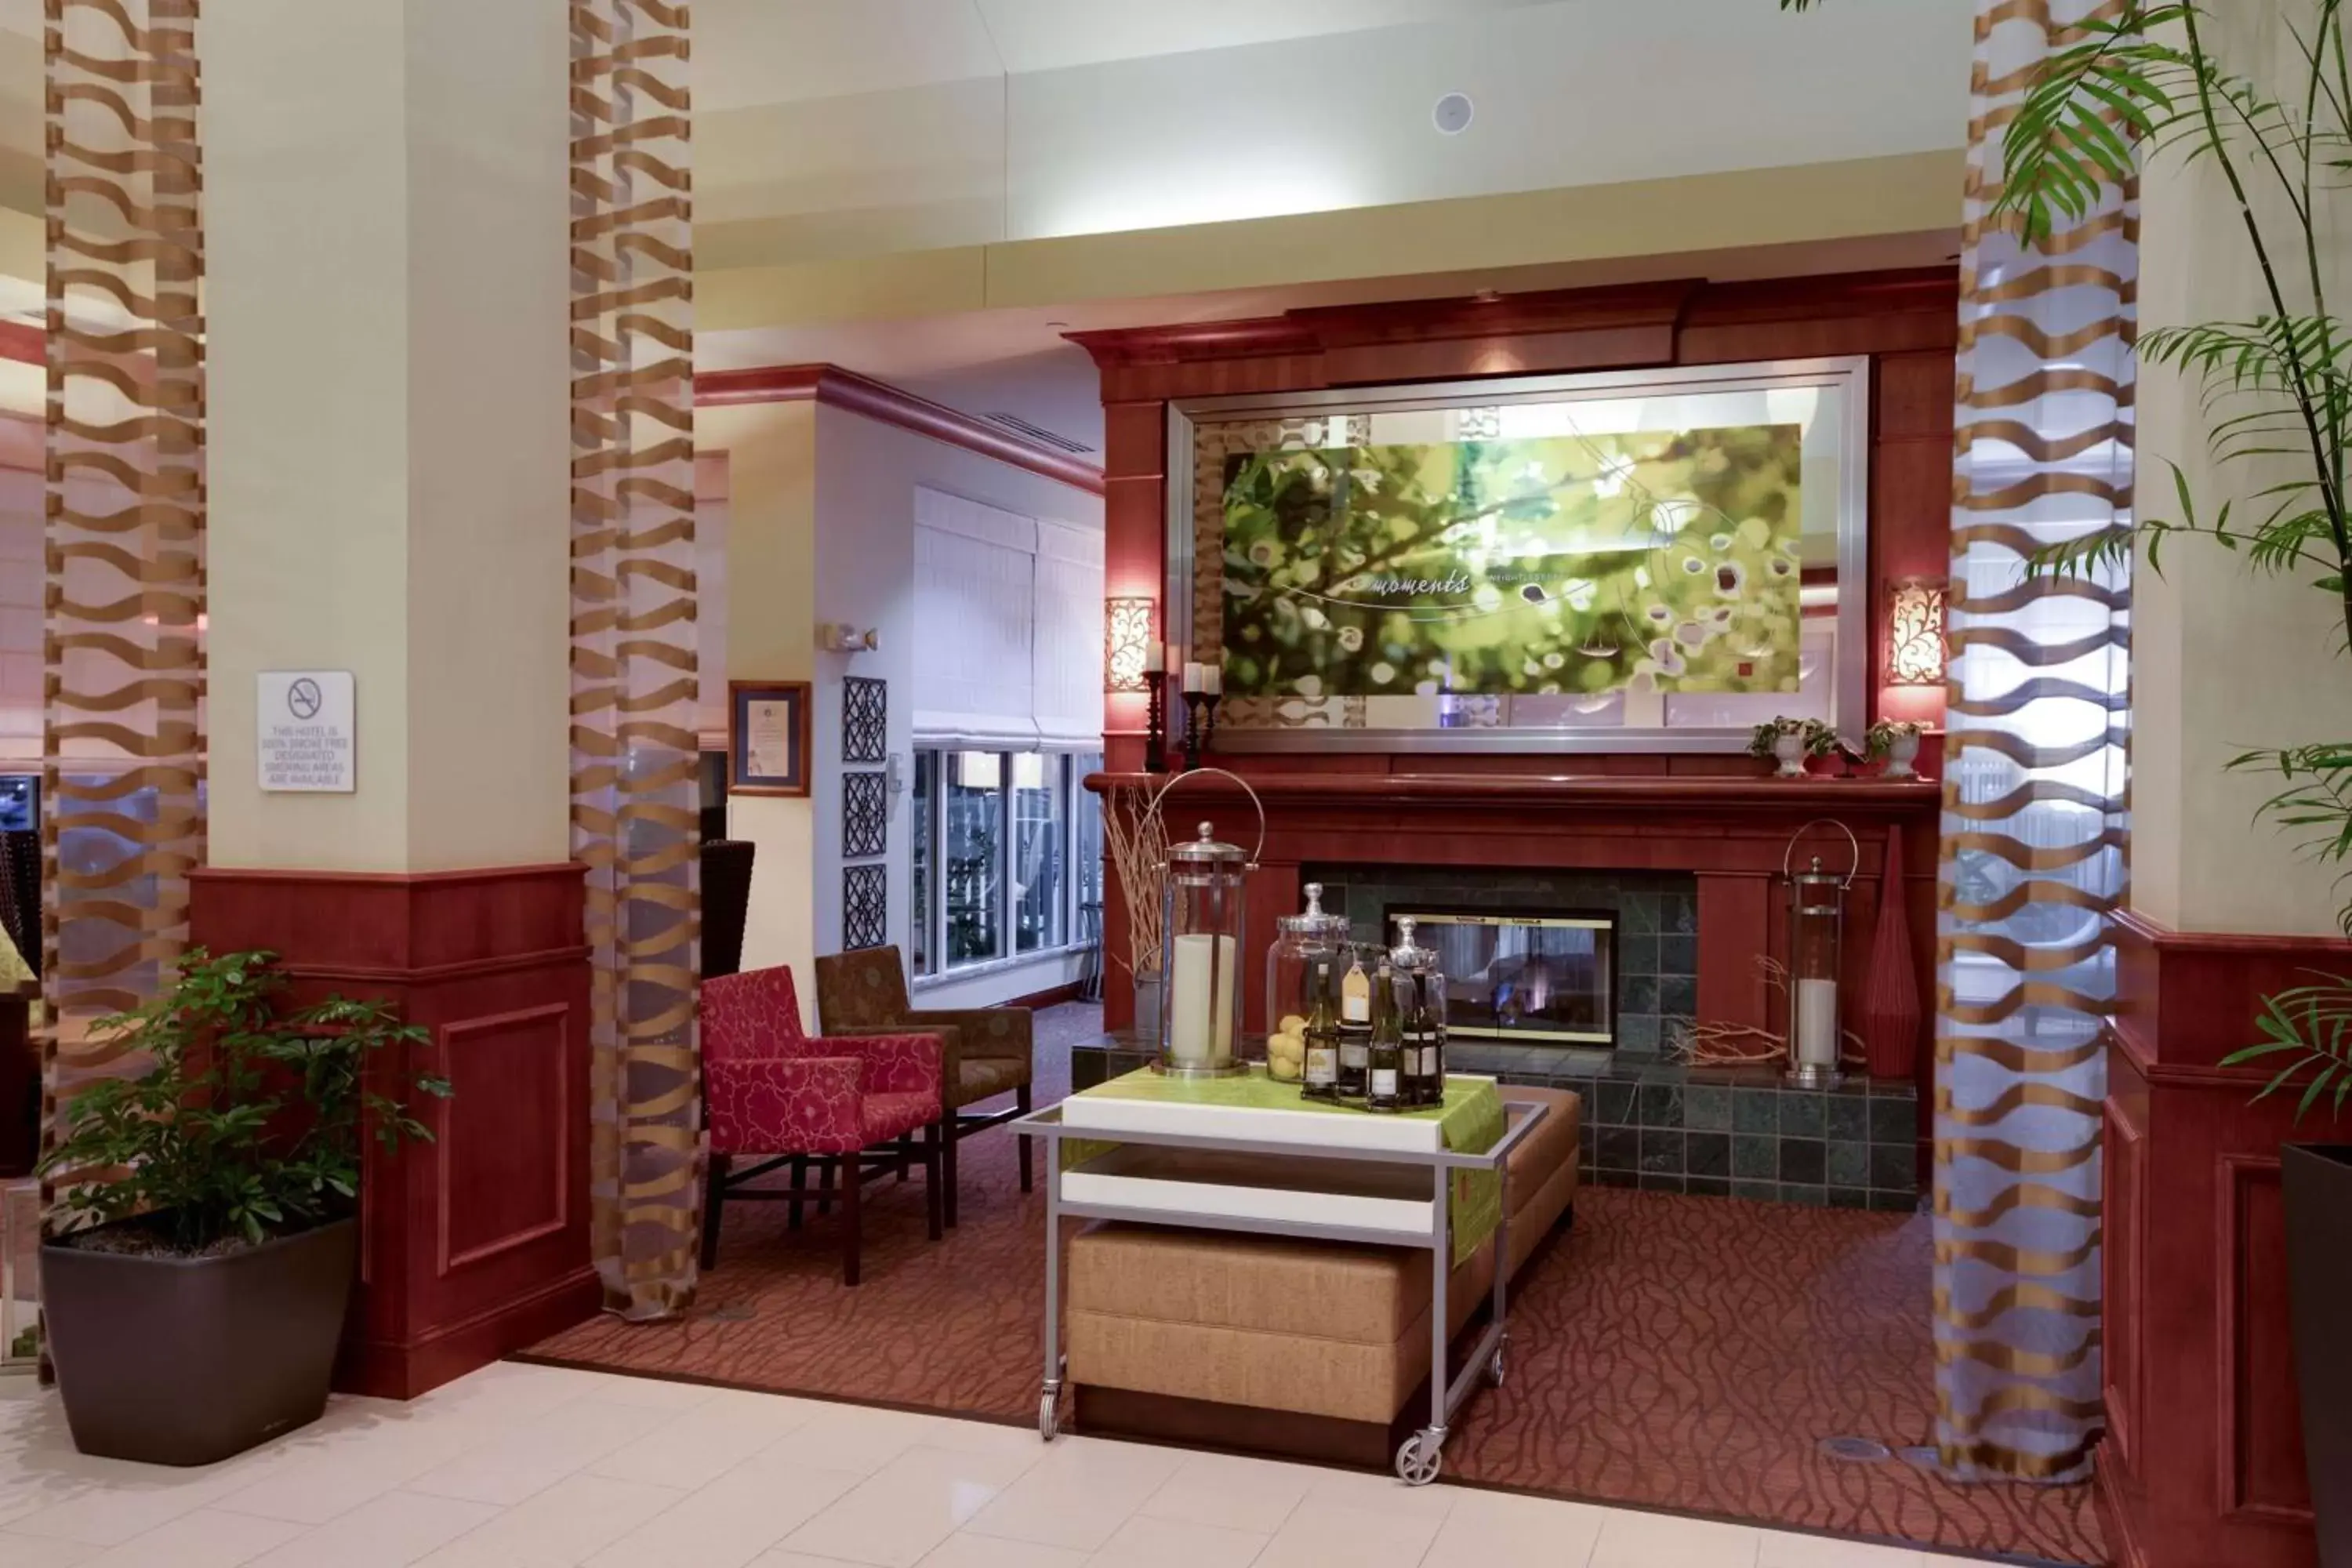 Lobby or reception, Lobby/Reception in Hilton Garden Inn Oklahoma City Airport